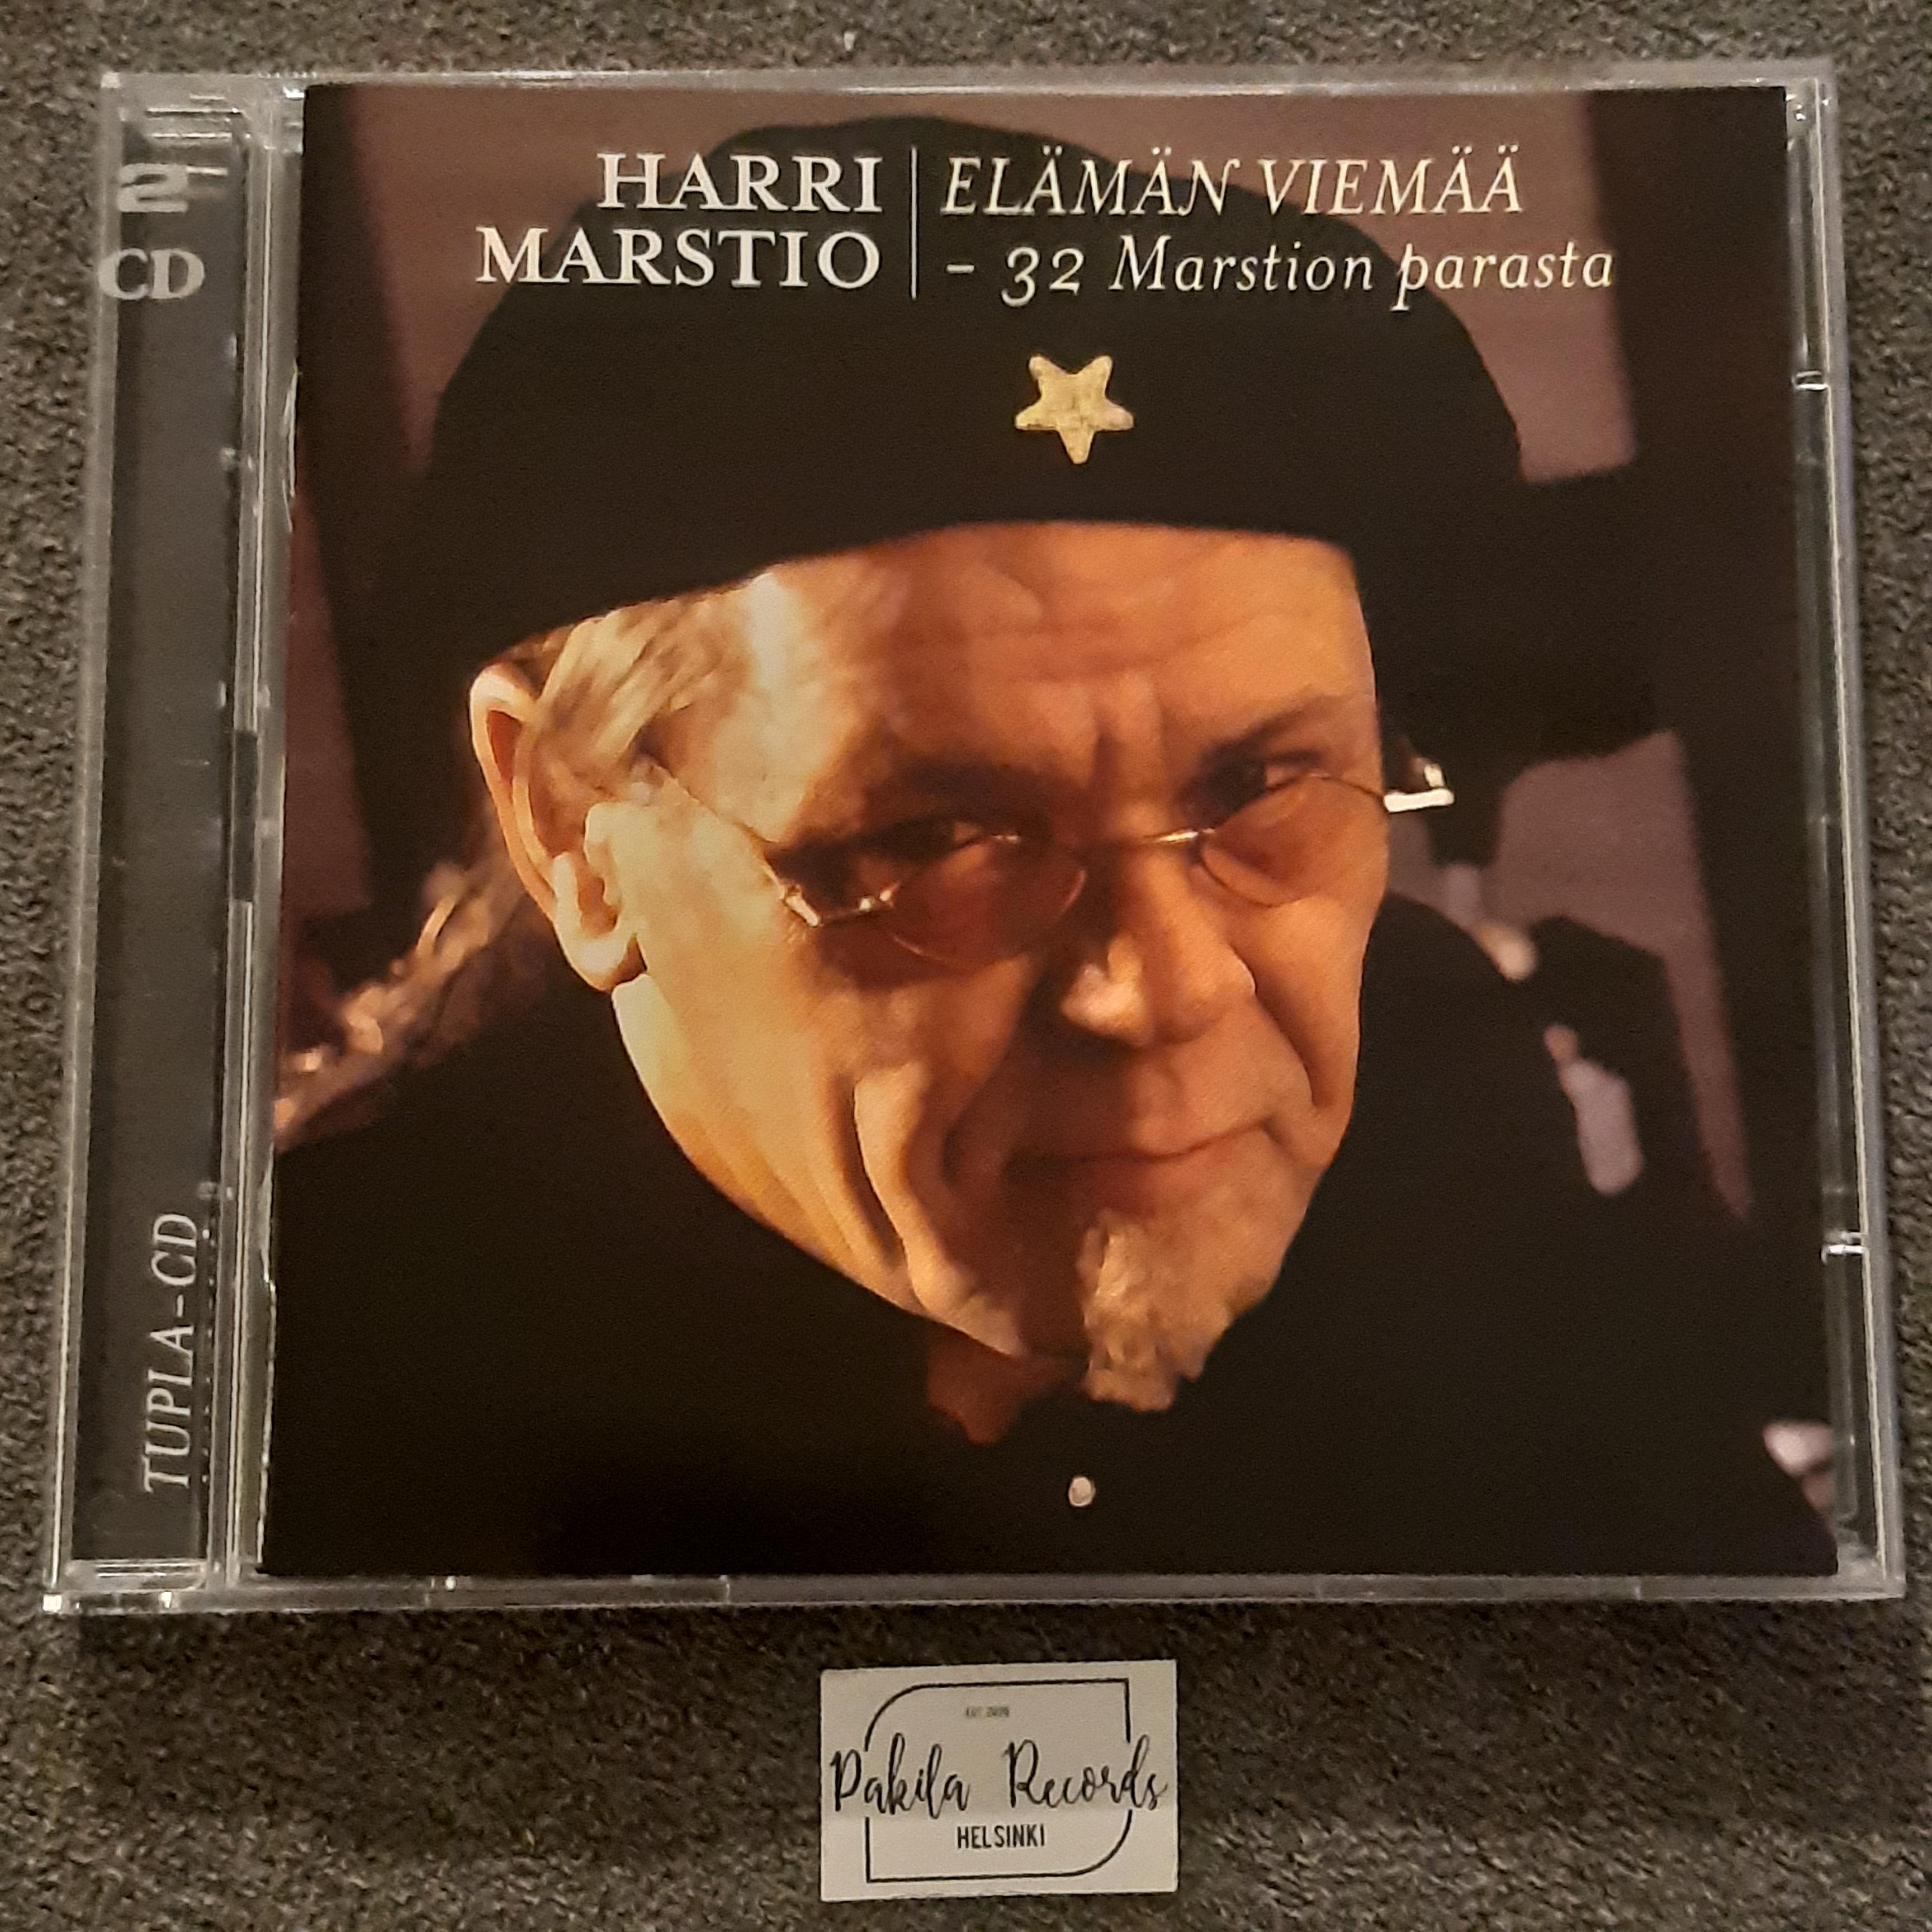 Harri Marstio - Elämän viemää, 32 Marstion parasta - 2 CD (käytetty)